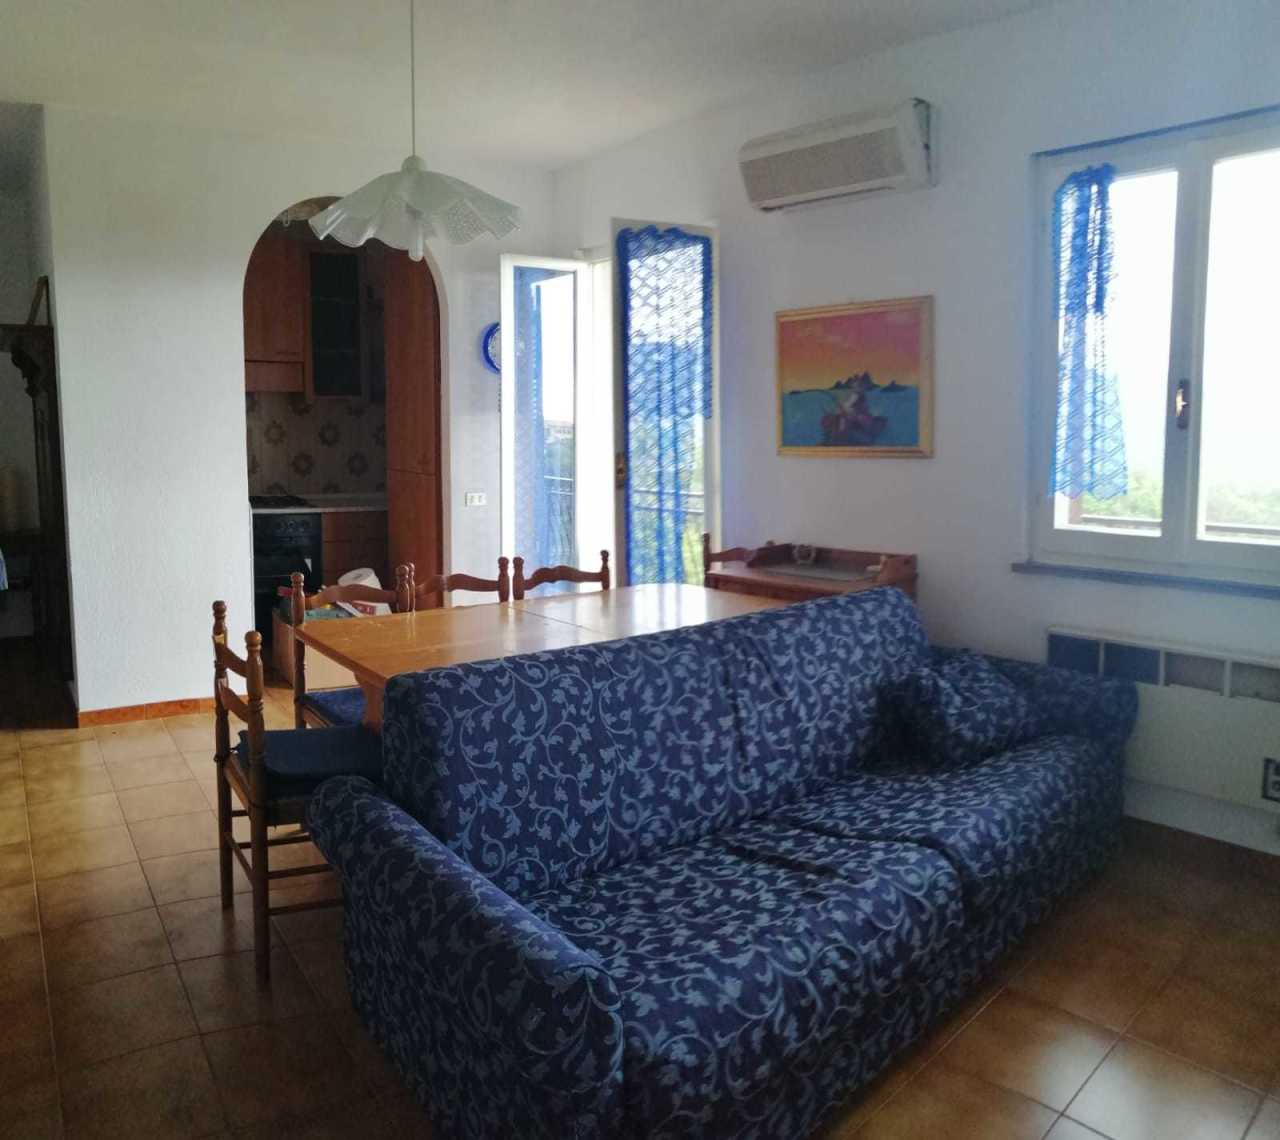 Appartamento in affitto a San Colombano Certenoli, 3 locali, prezzo € 280 | PortaleAgenzieImmobiliari.it